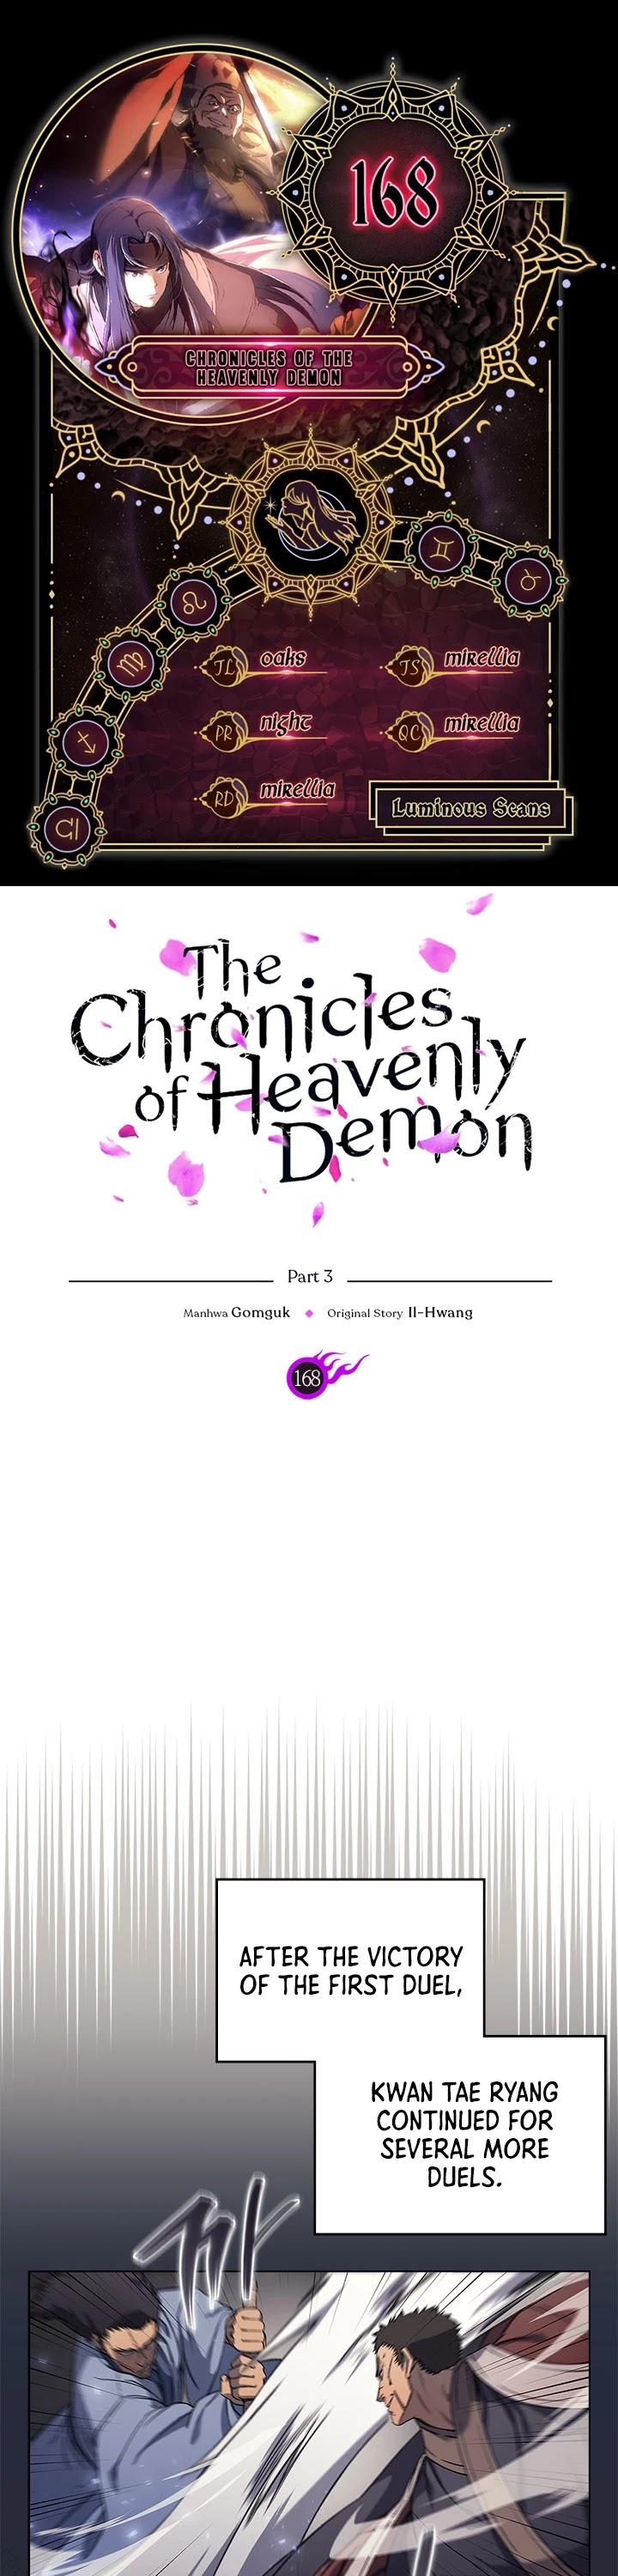 Ler mangá Chronicles of Heavenly Demon